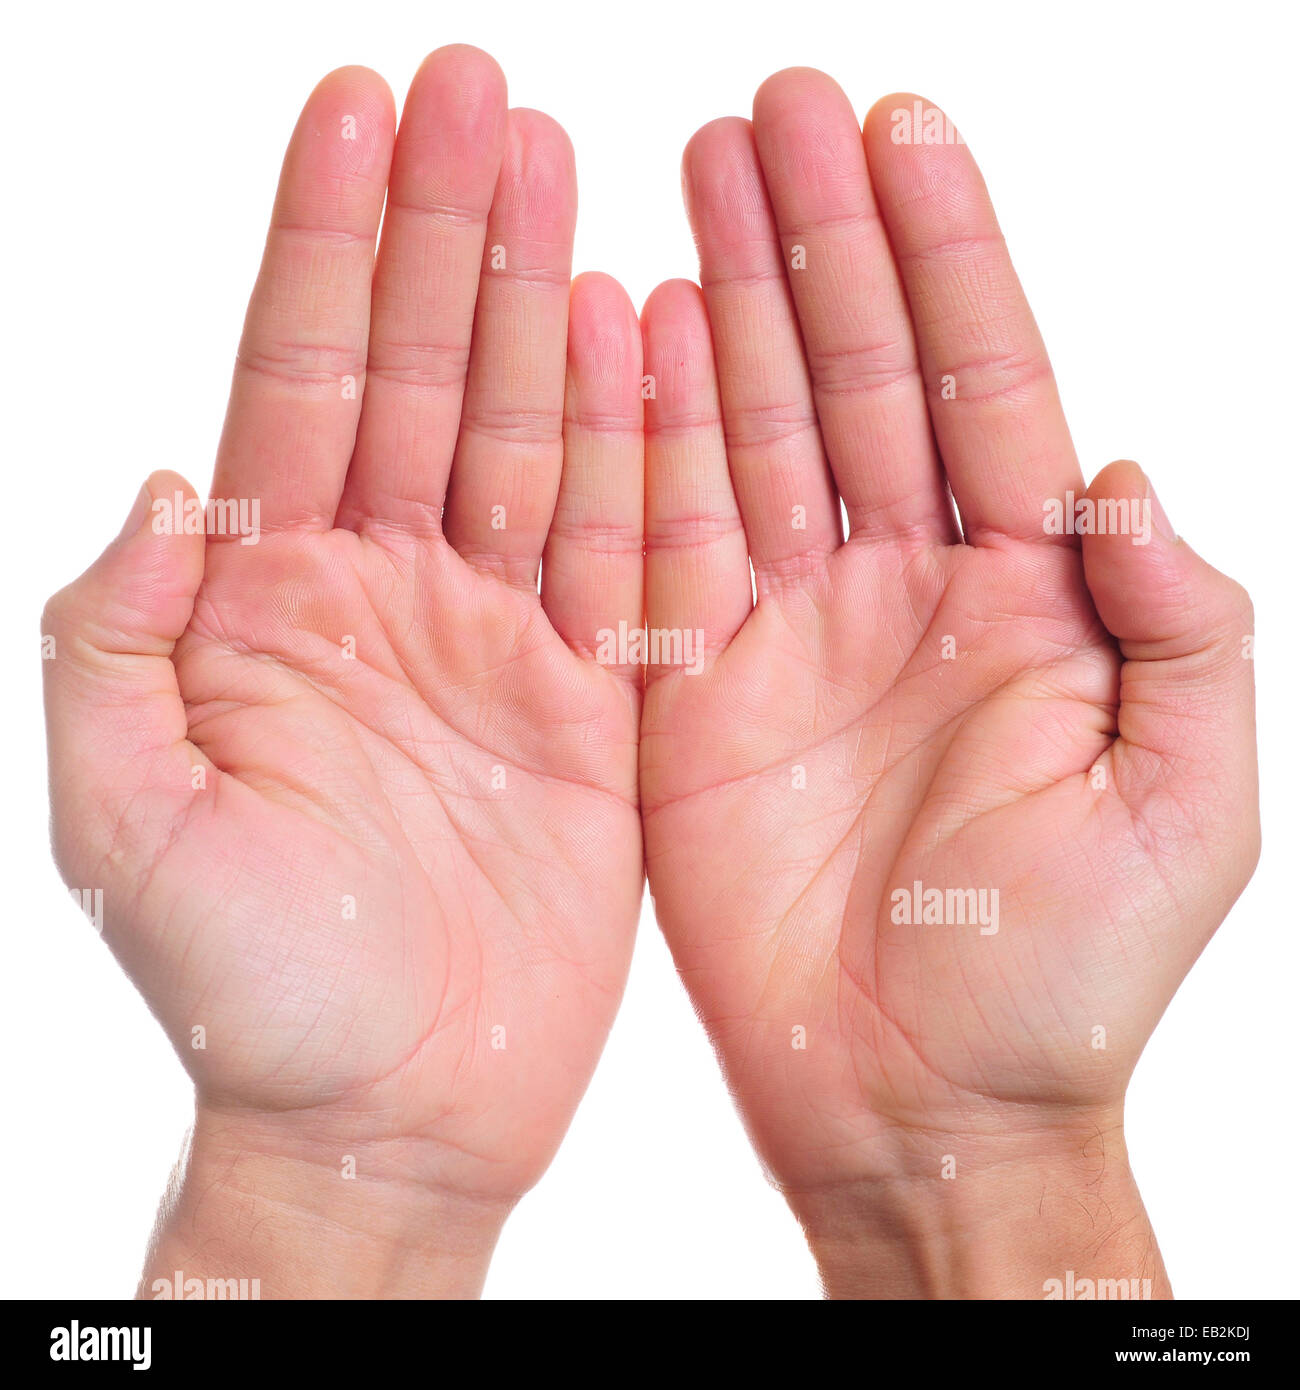 Le mani aperte di un uomo come mostra o trattenere qualcosa o di accattonaggio Foto Stock